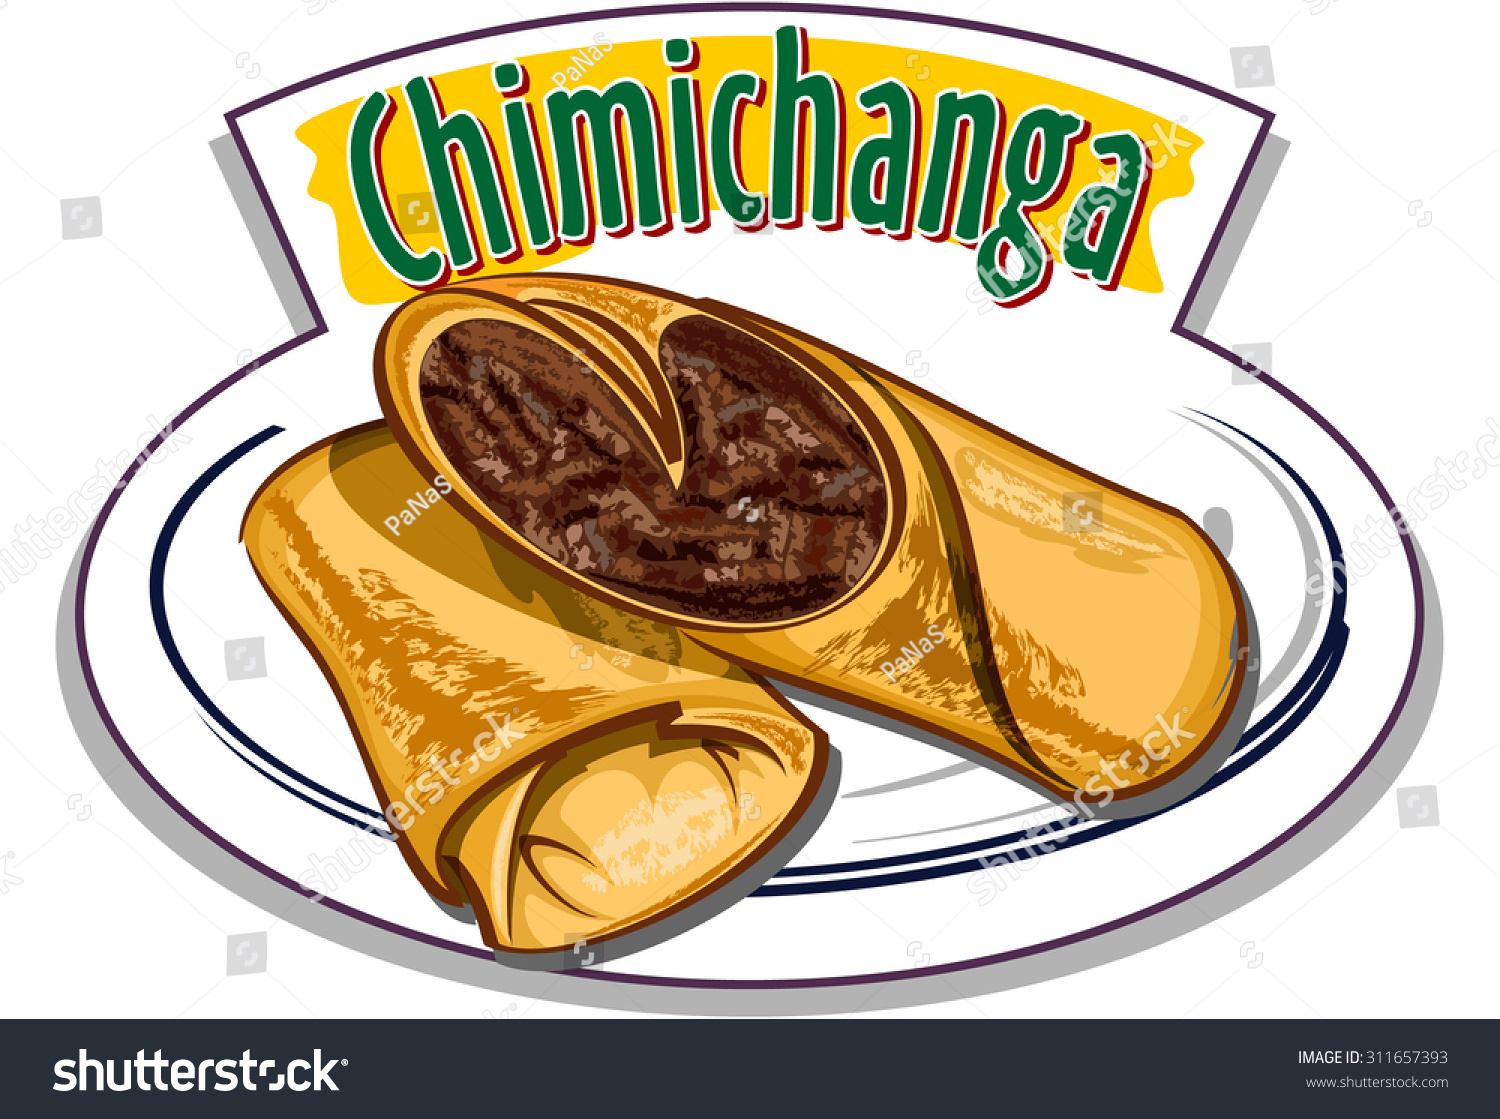 SVG of Chimichanga vector svg